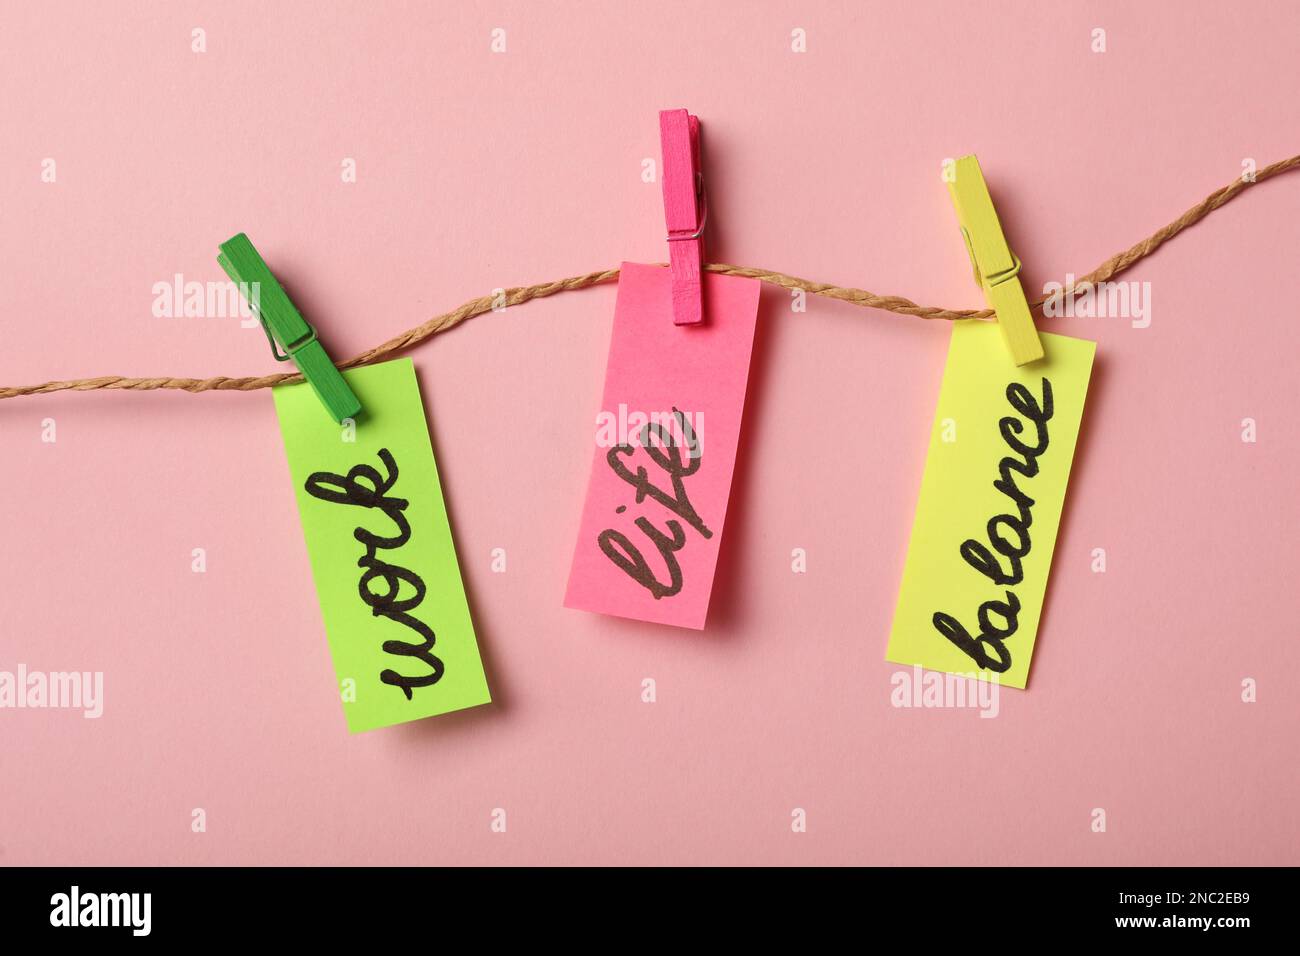 Pezzi di carta con parole lavoro, vita, equilibrio appeso su corda contro sfondo rosa, piatto Foto Stock